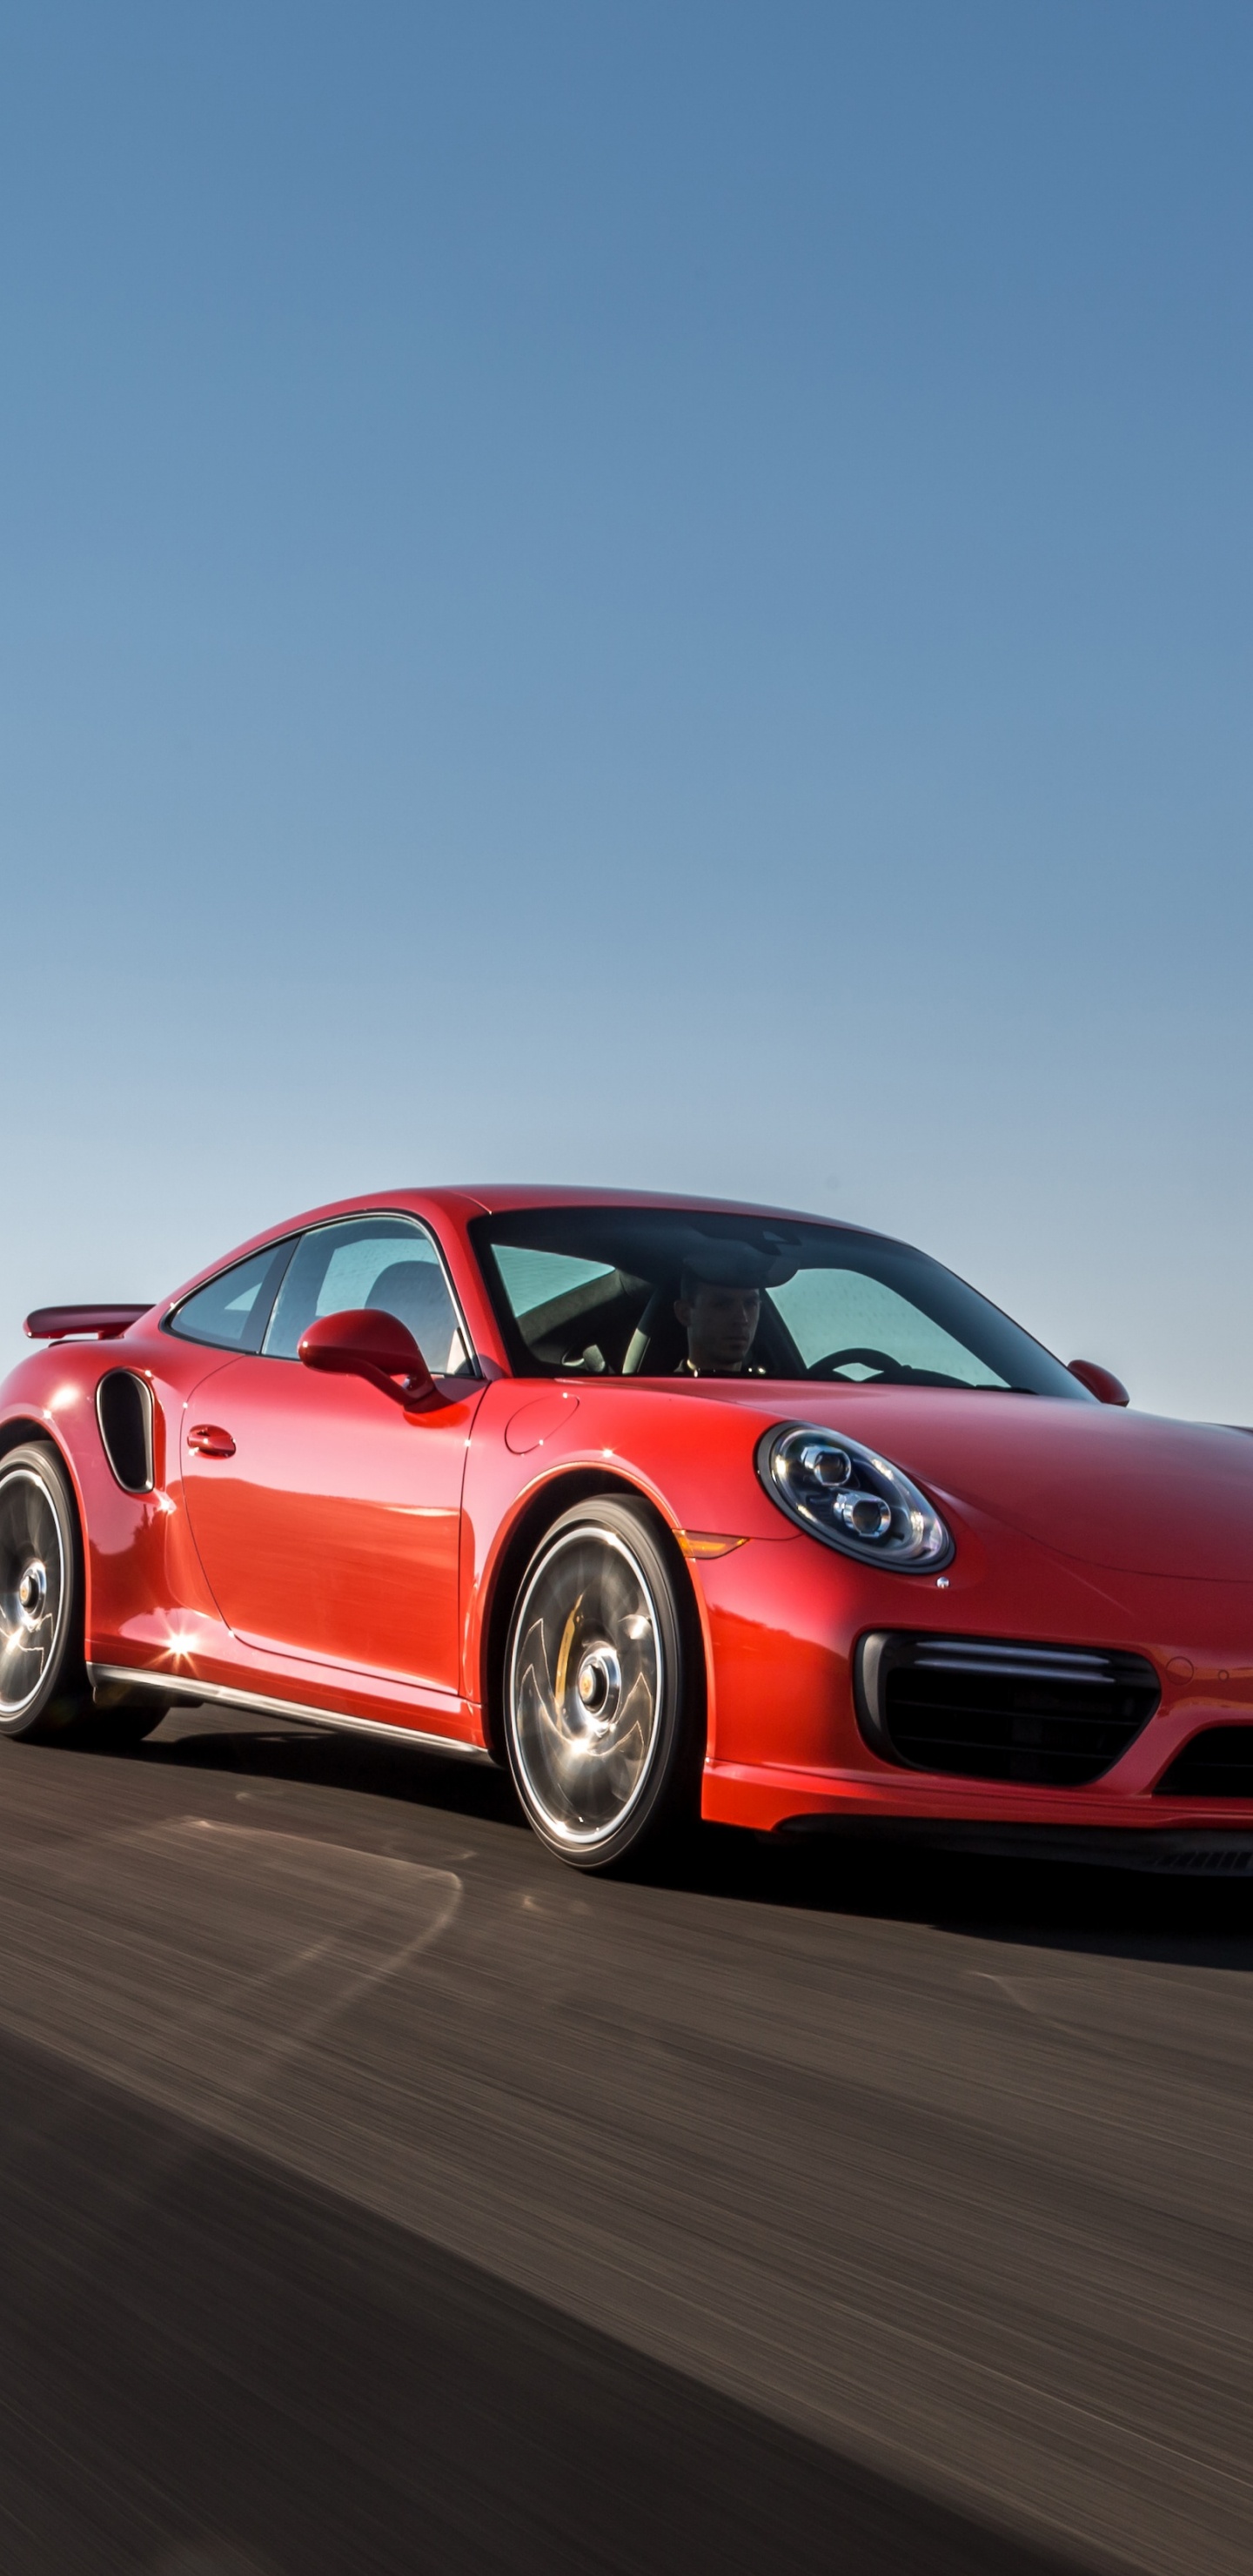 Porsche 911 Rouge Sur Route Pendant la Journée. Wallpaper in 1440x2960 Resolution